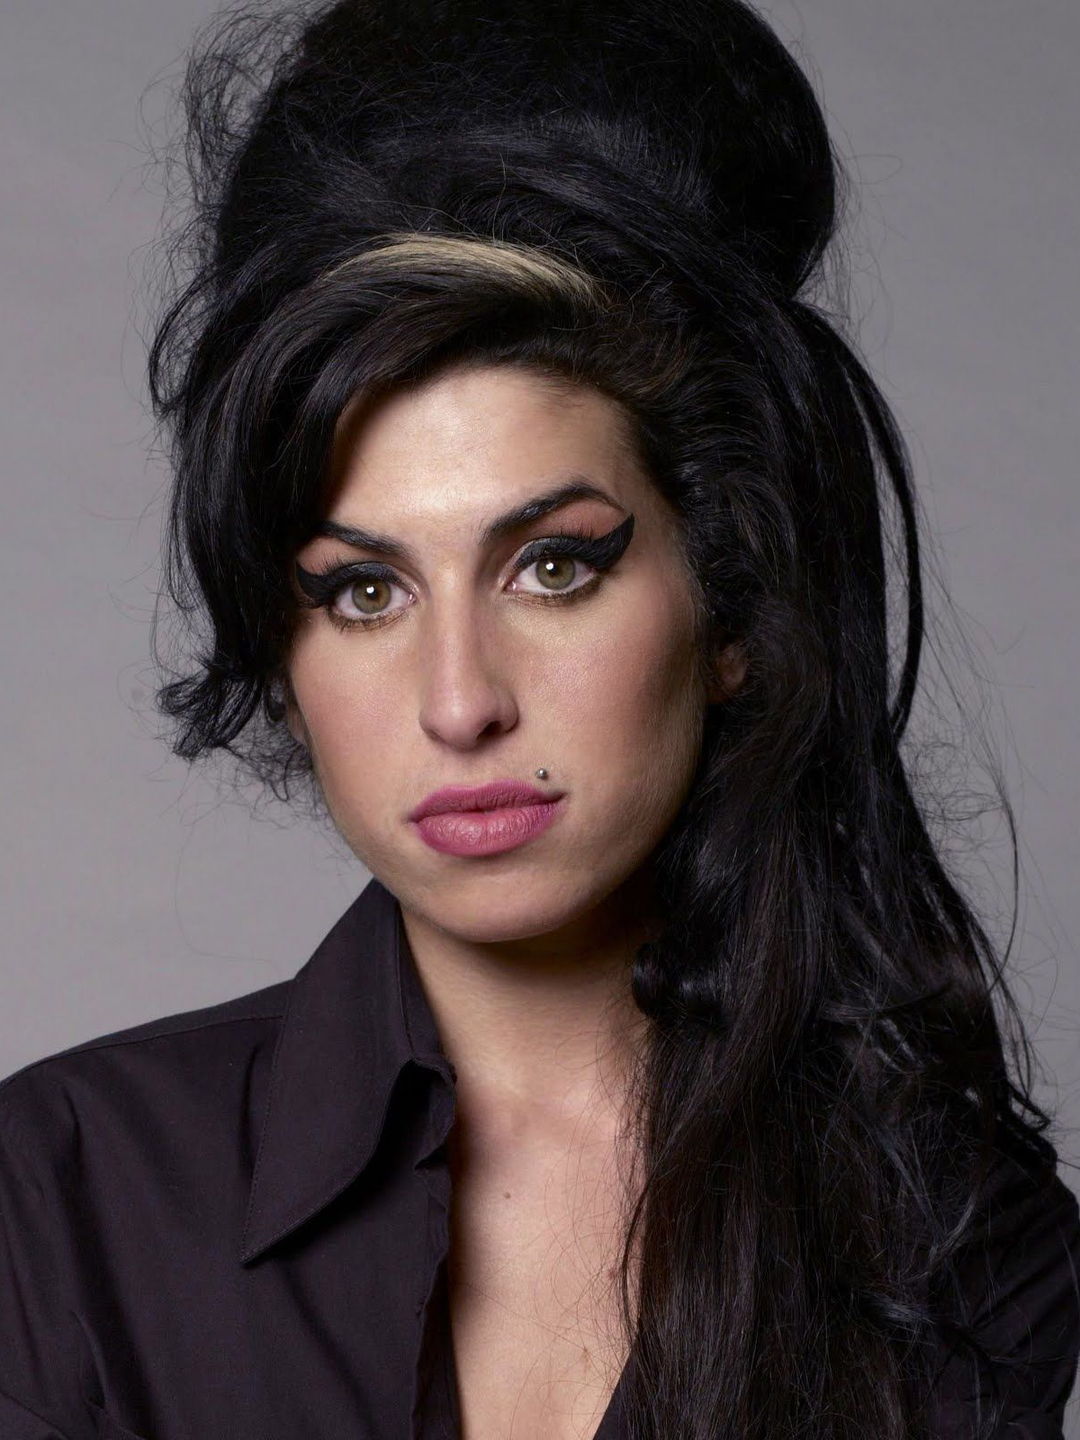 Amy Winehouse background